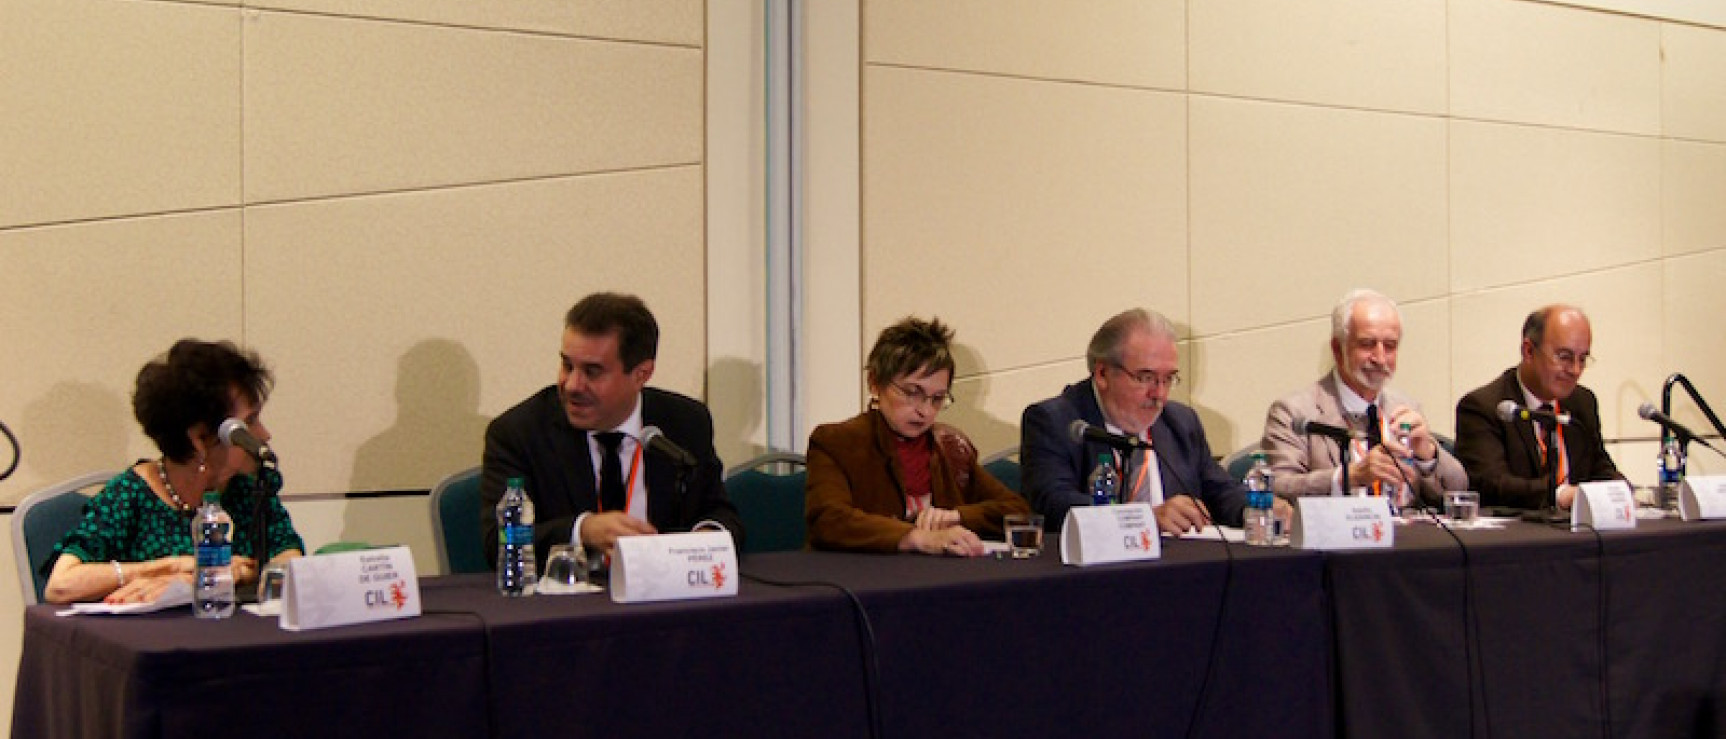 Participantes en el panel sobre los retos de la política panhispánica.